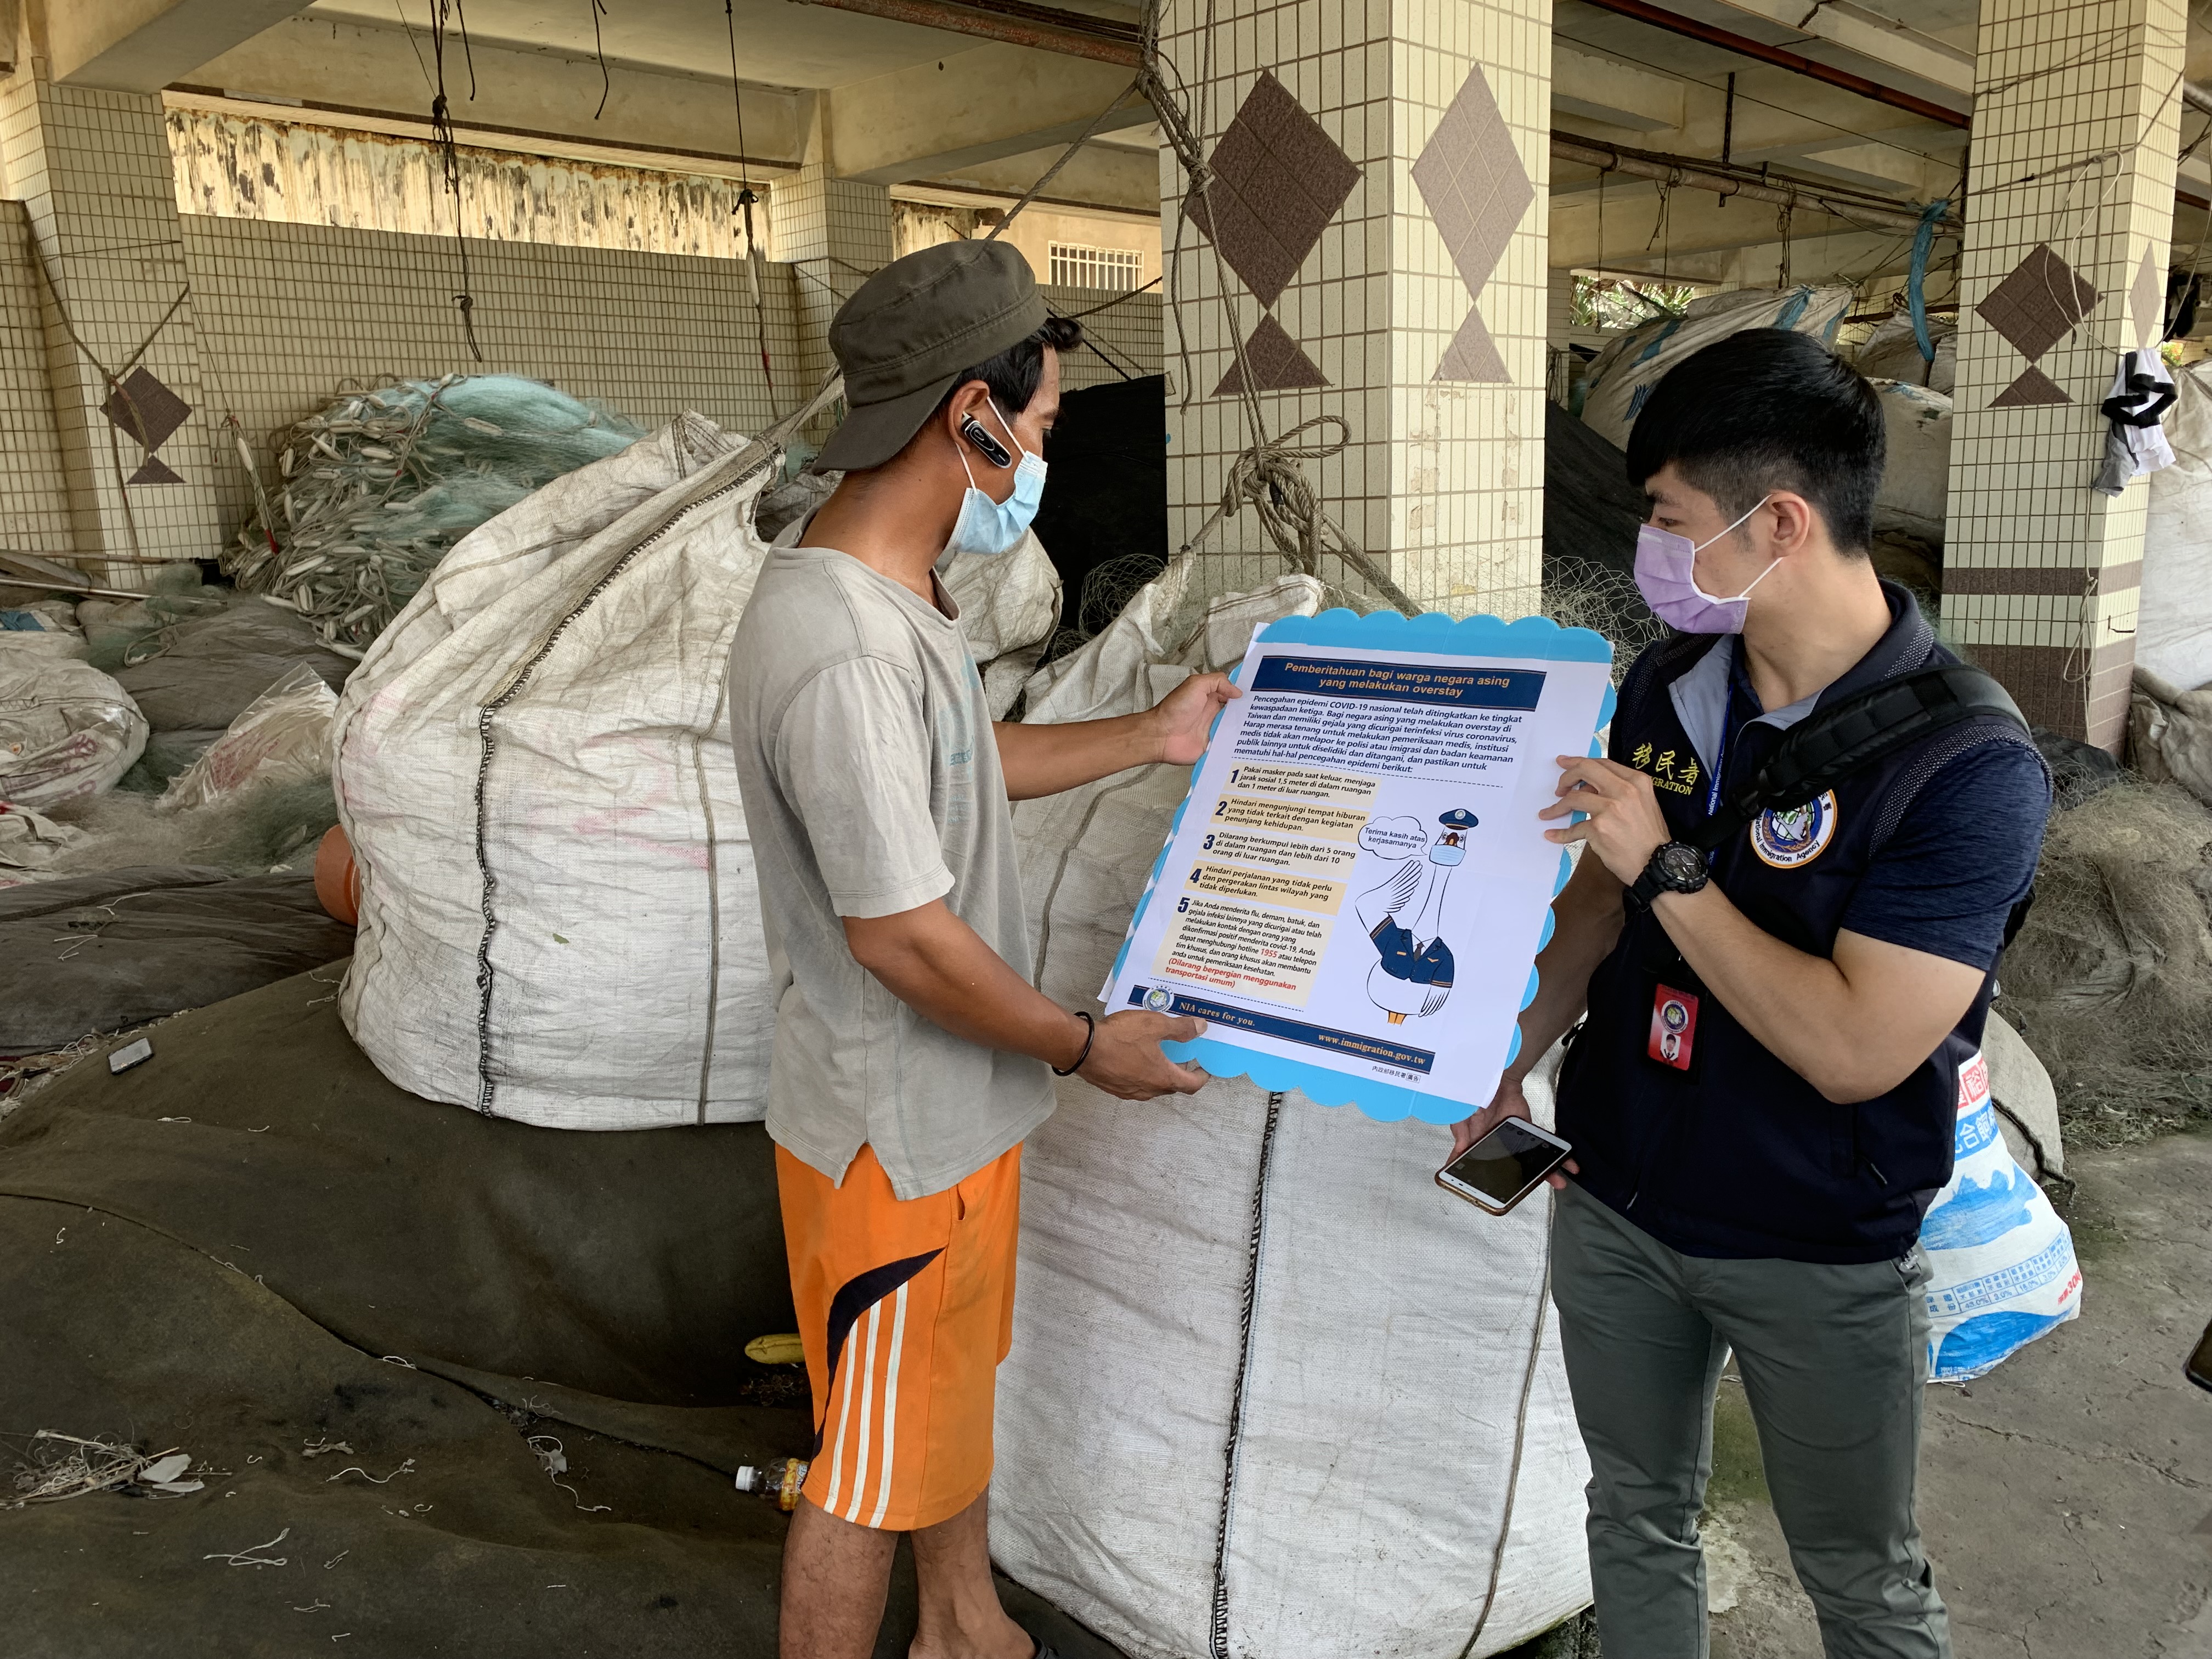 Tidak hanya memberikan pengumuman dalam berbagai bahasa, juga menyebarluaskan peraturan pencegahan pandemi kepada nelayan dan pemilik kapal. Sumber: Stasiun Layanan Kota Taoyuan